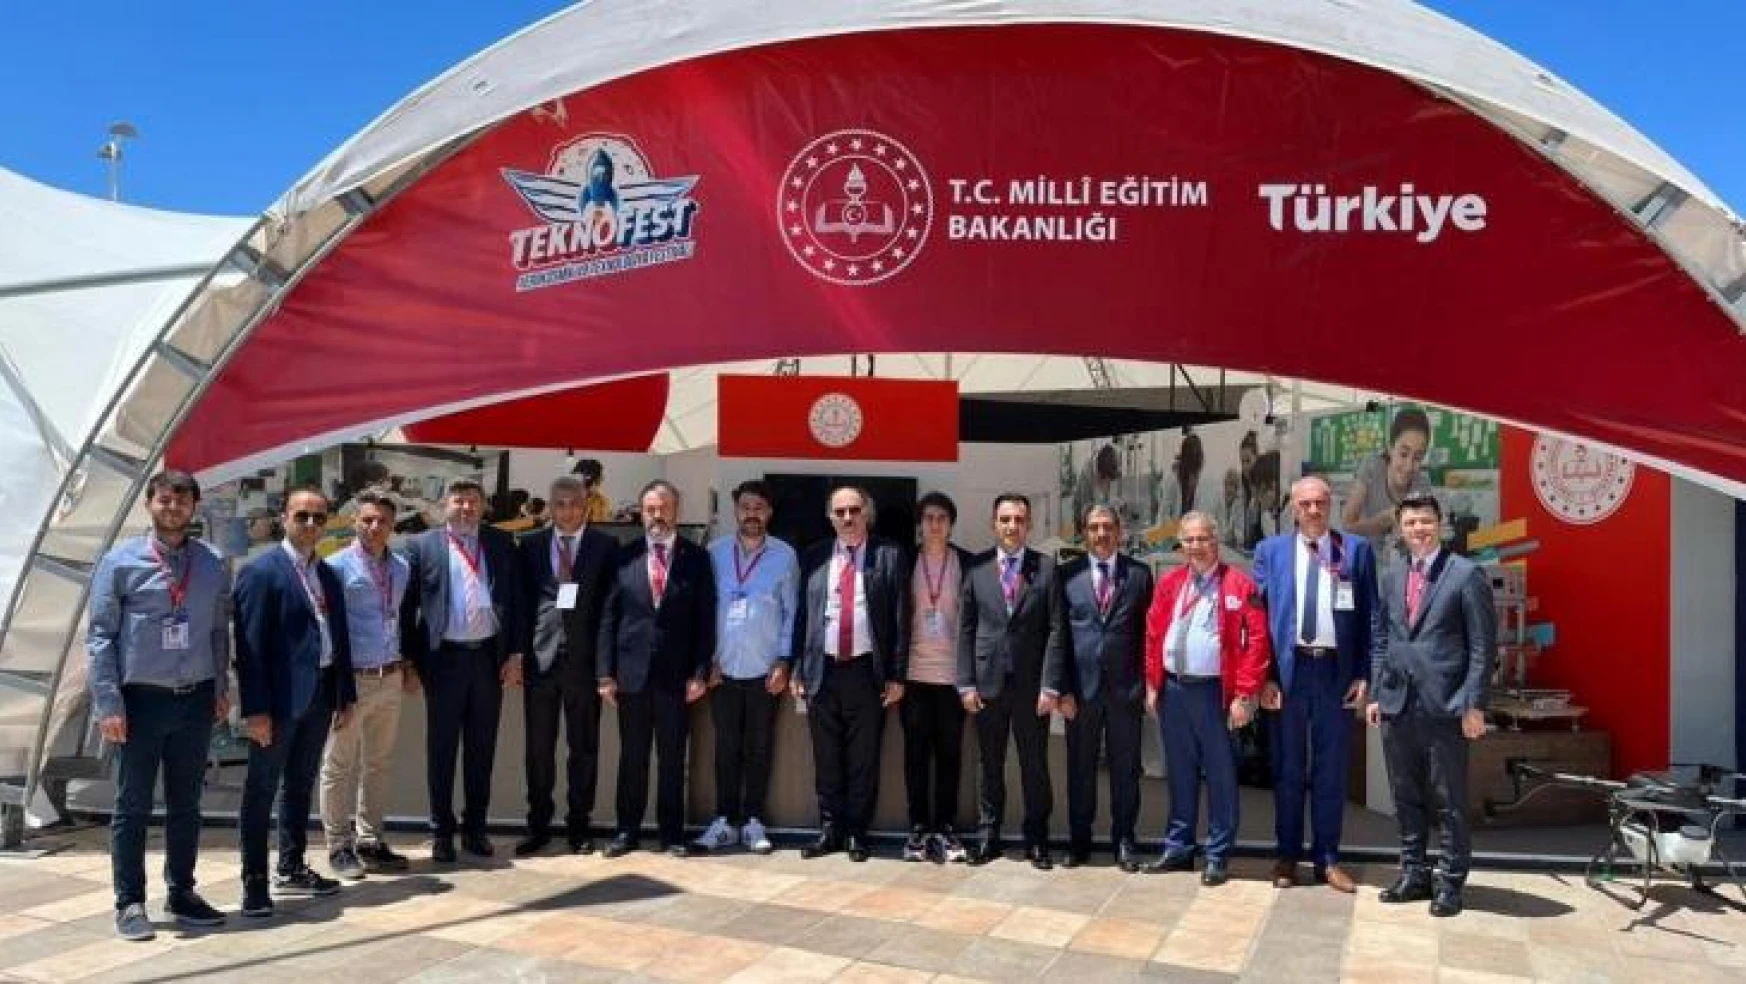 Milli Eğitim Bakanı Özer, TEKNOFEST'te MEB'in standını ziyaret etti